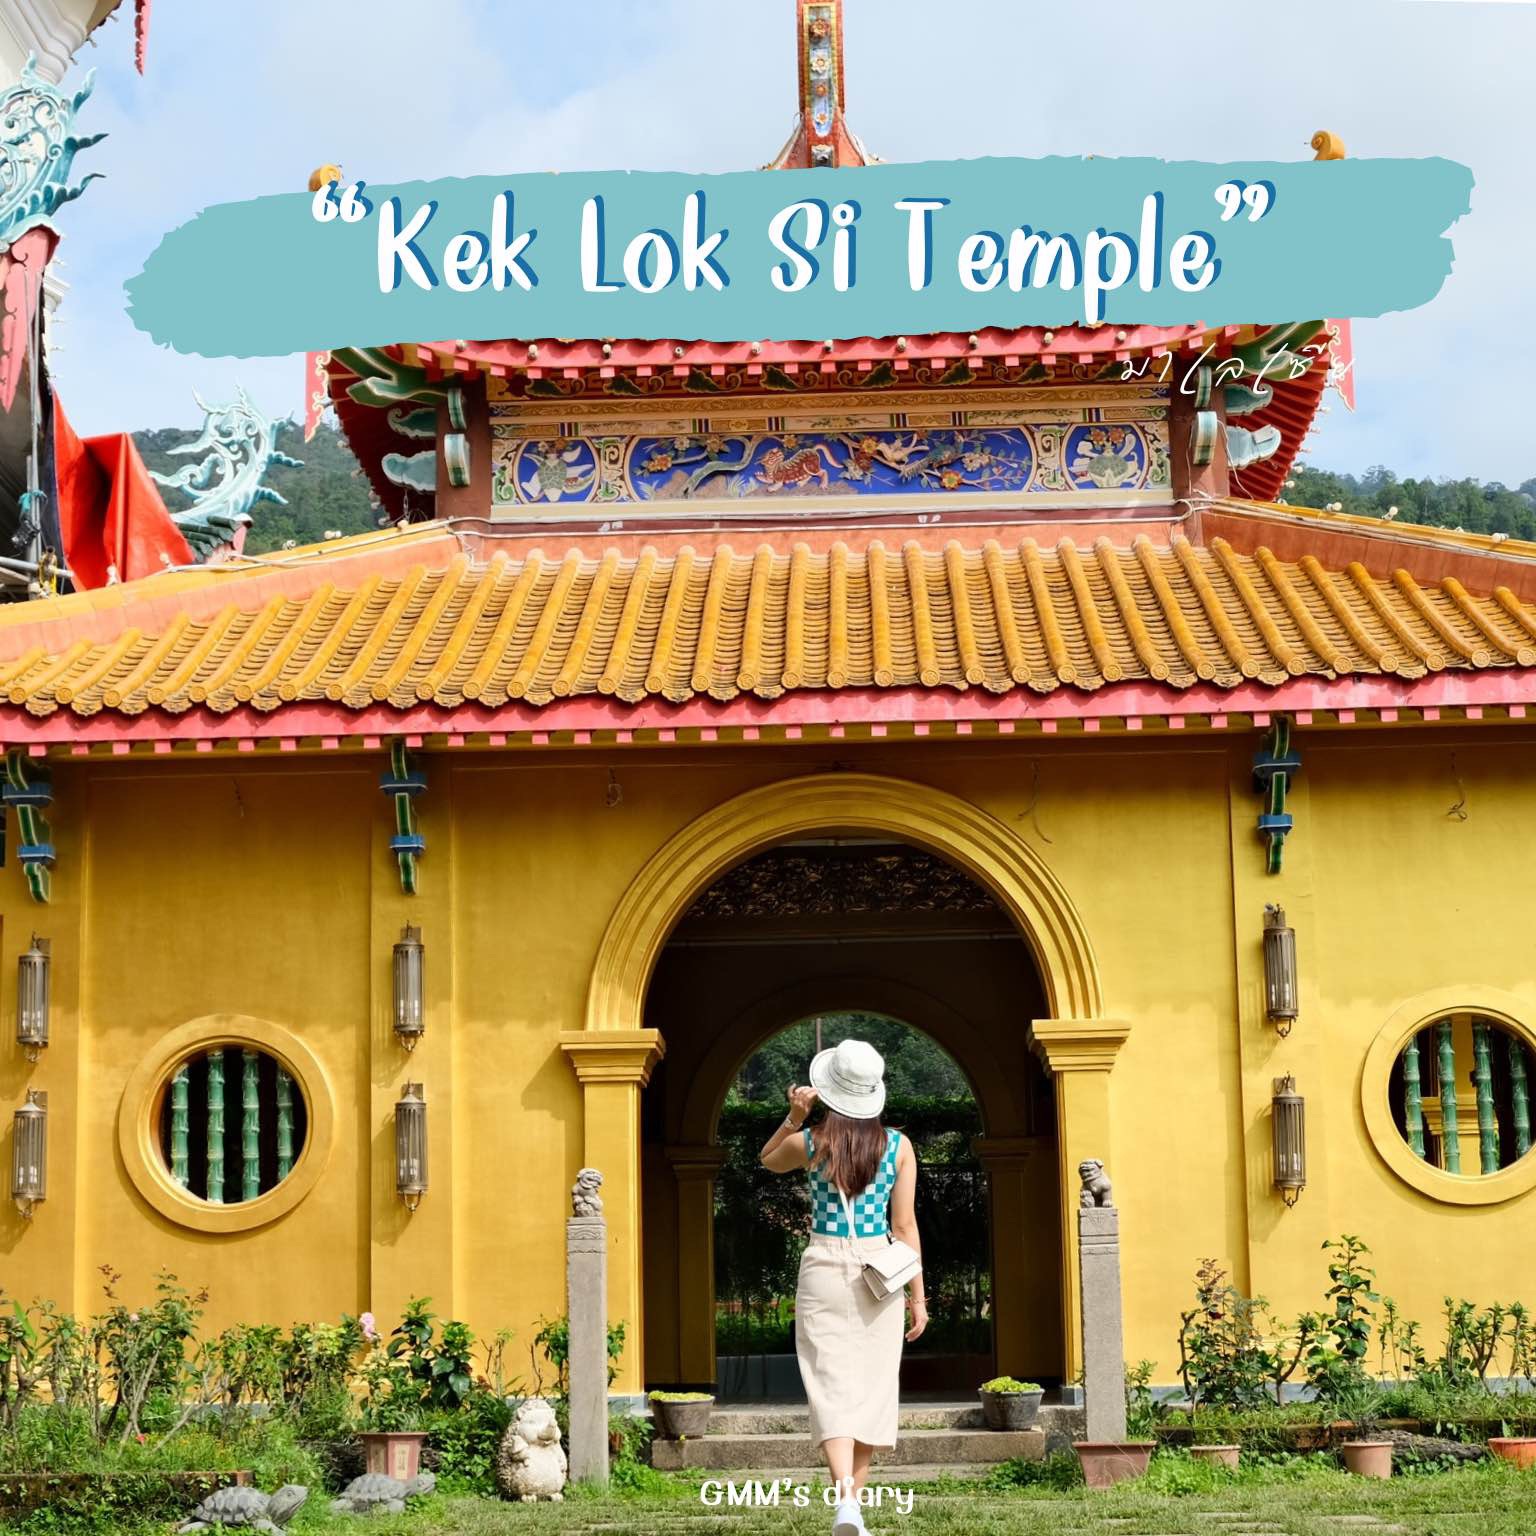 参观槟城岛最壮丽的中国寺庙 Kek Lok Si寺